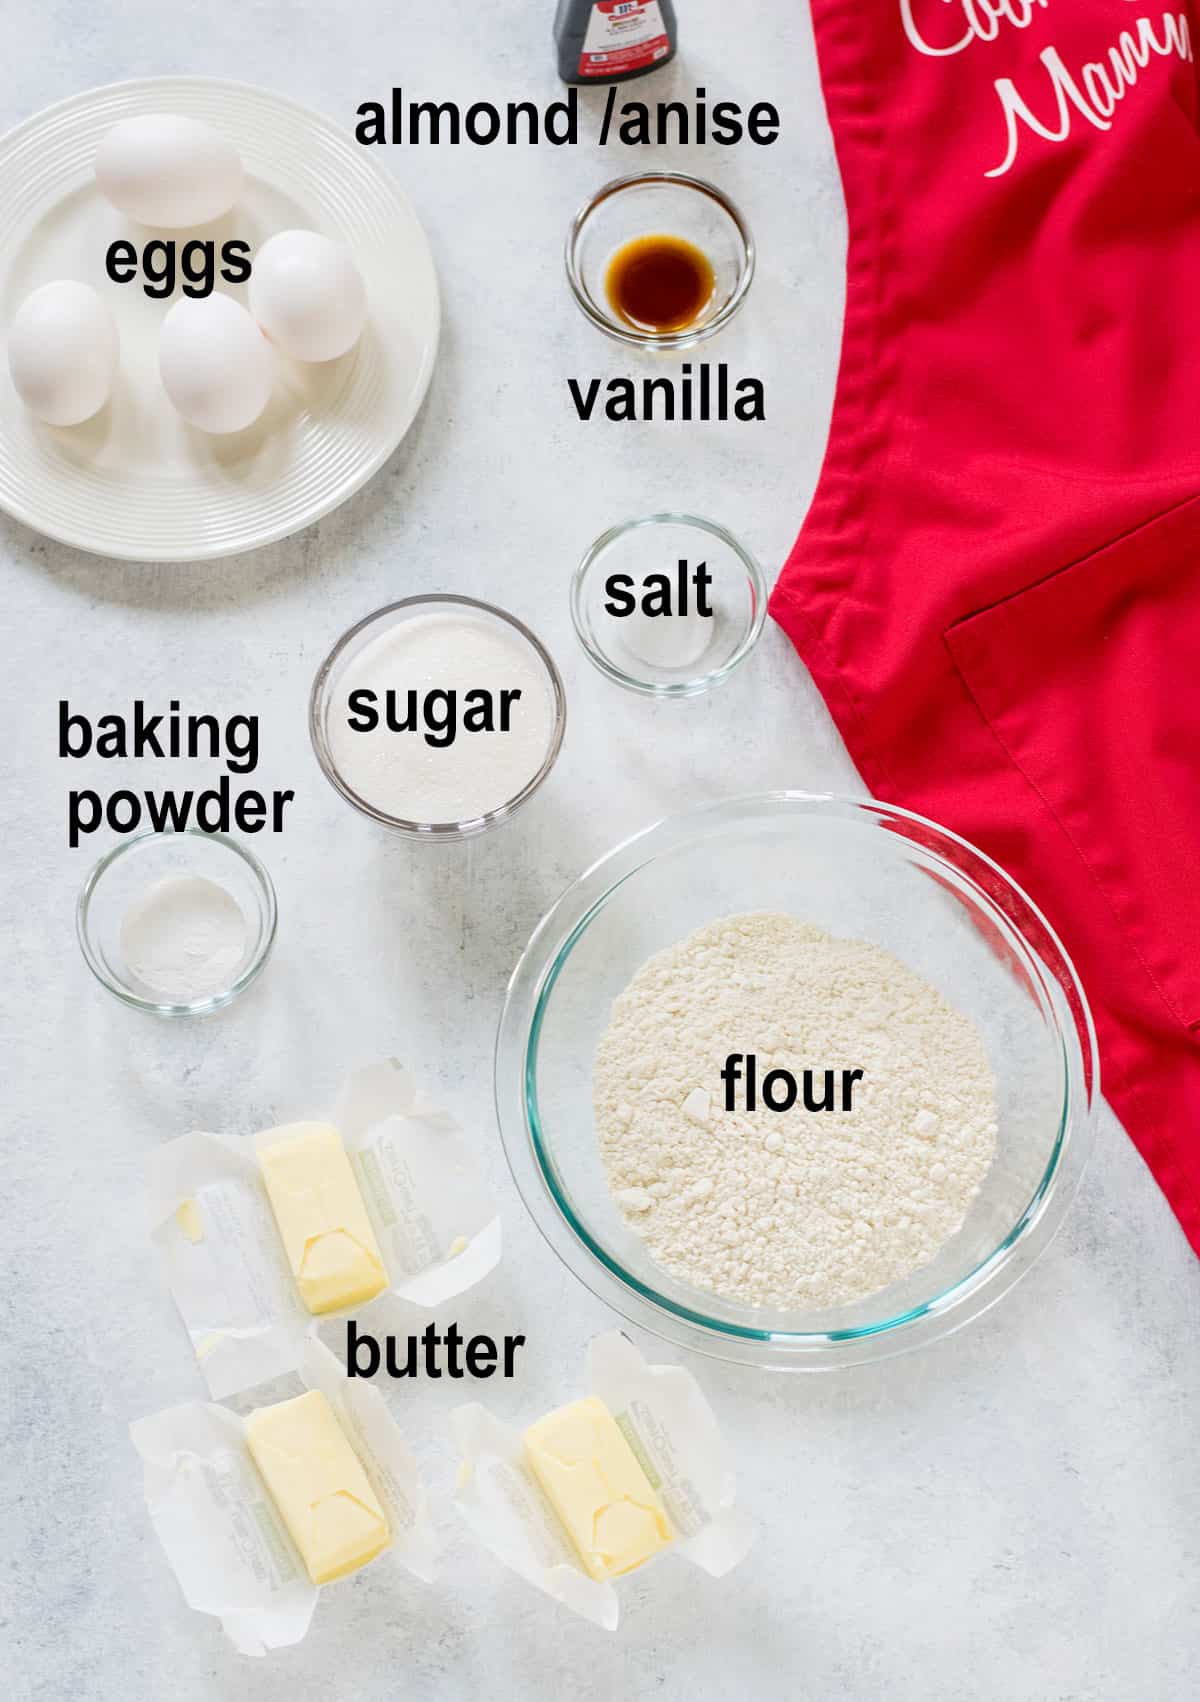 eggs, flour, butter, vanilla, extract, sugar, salt, baking powder